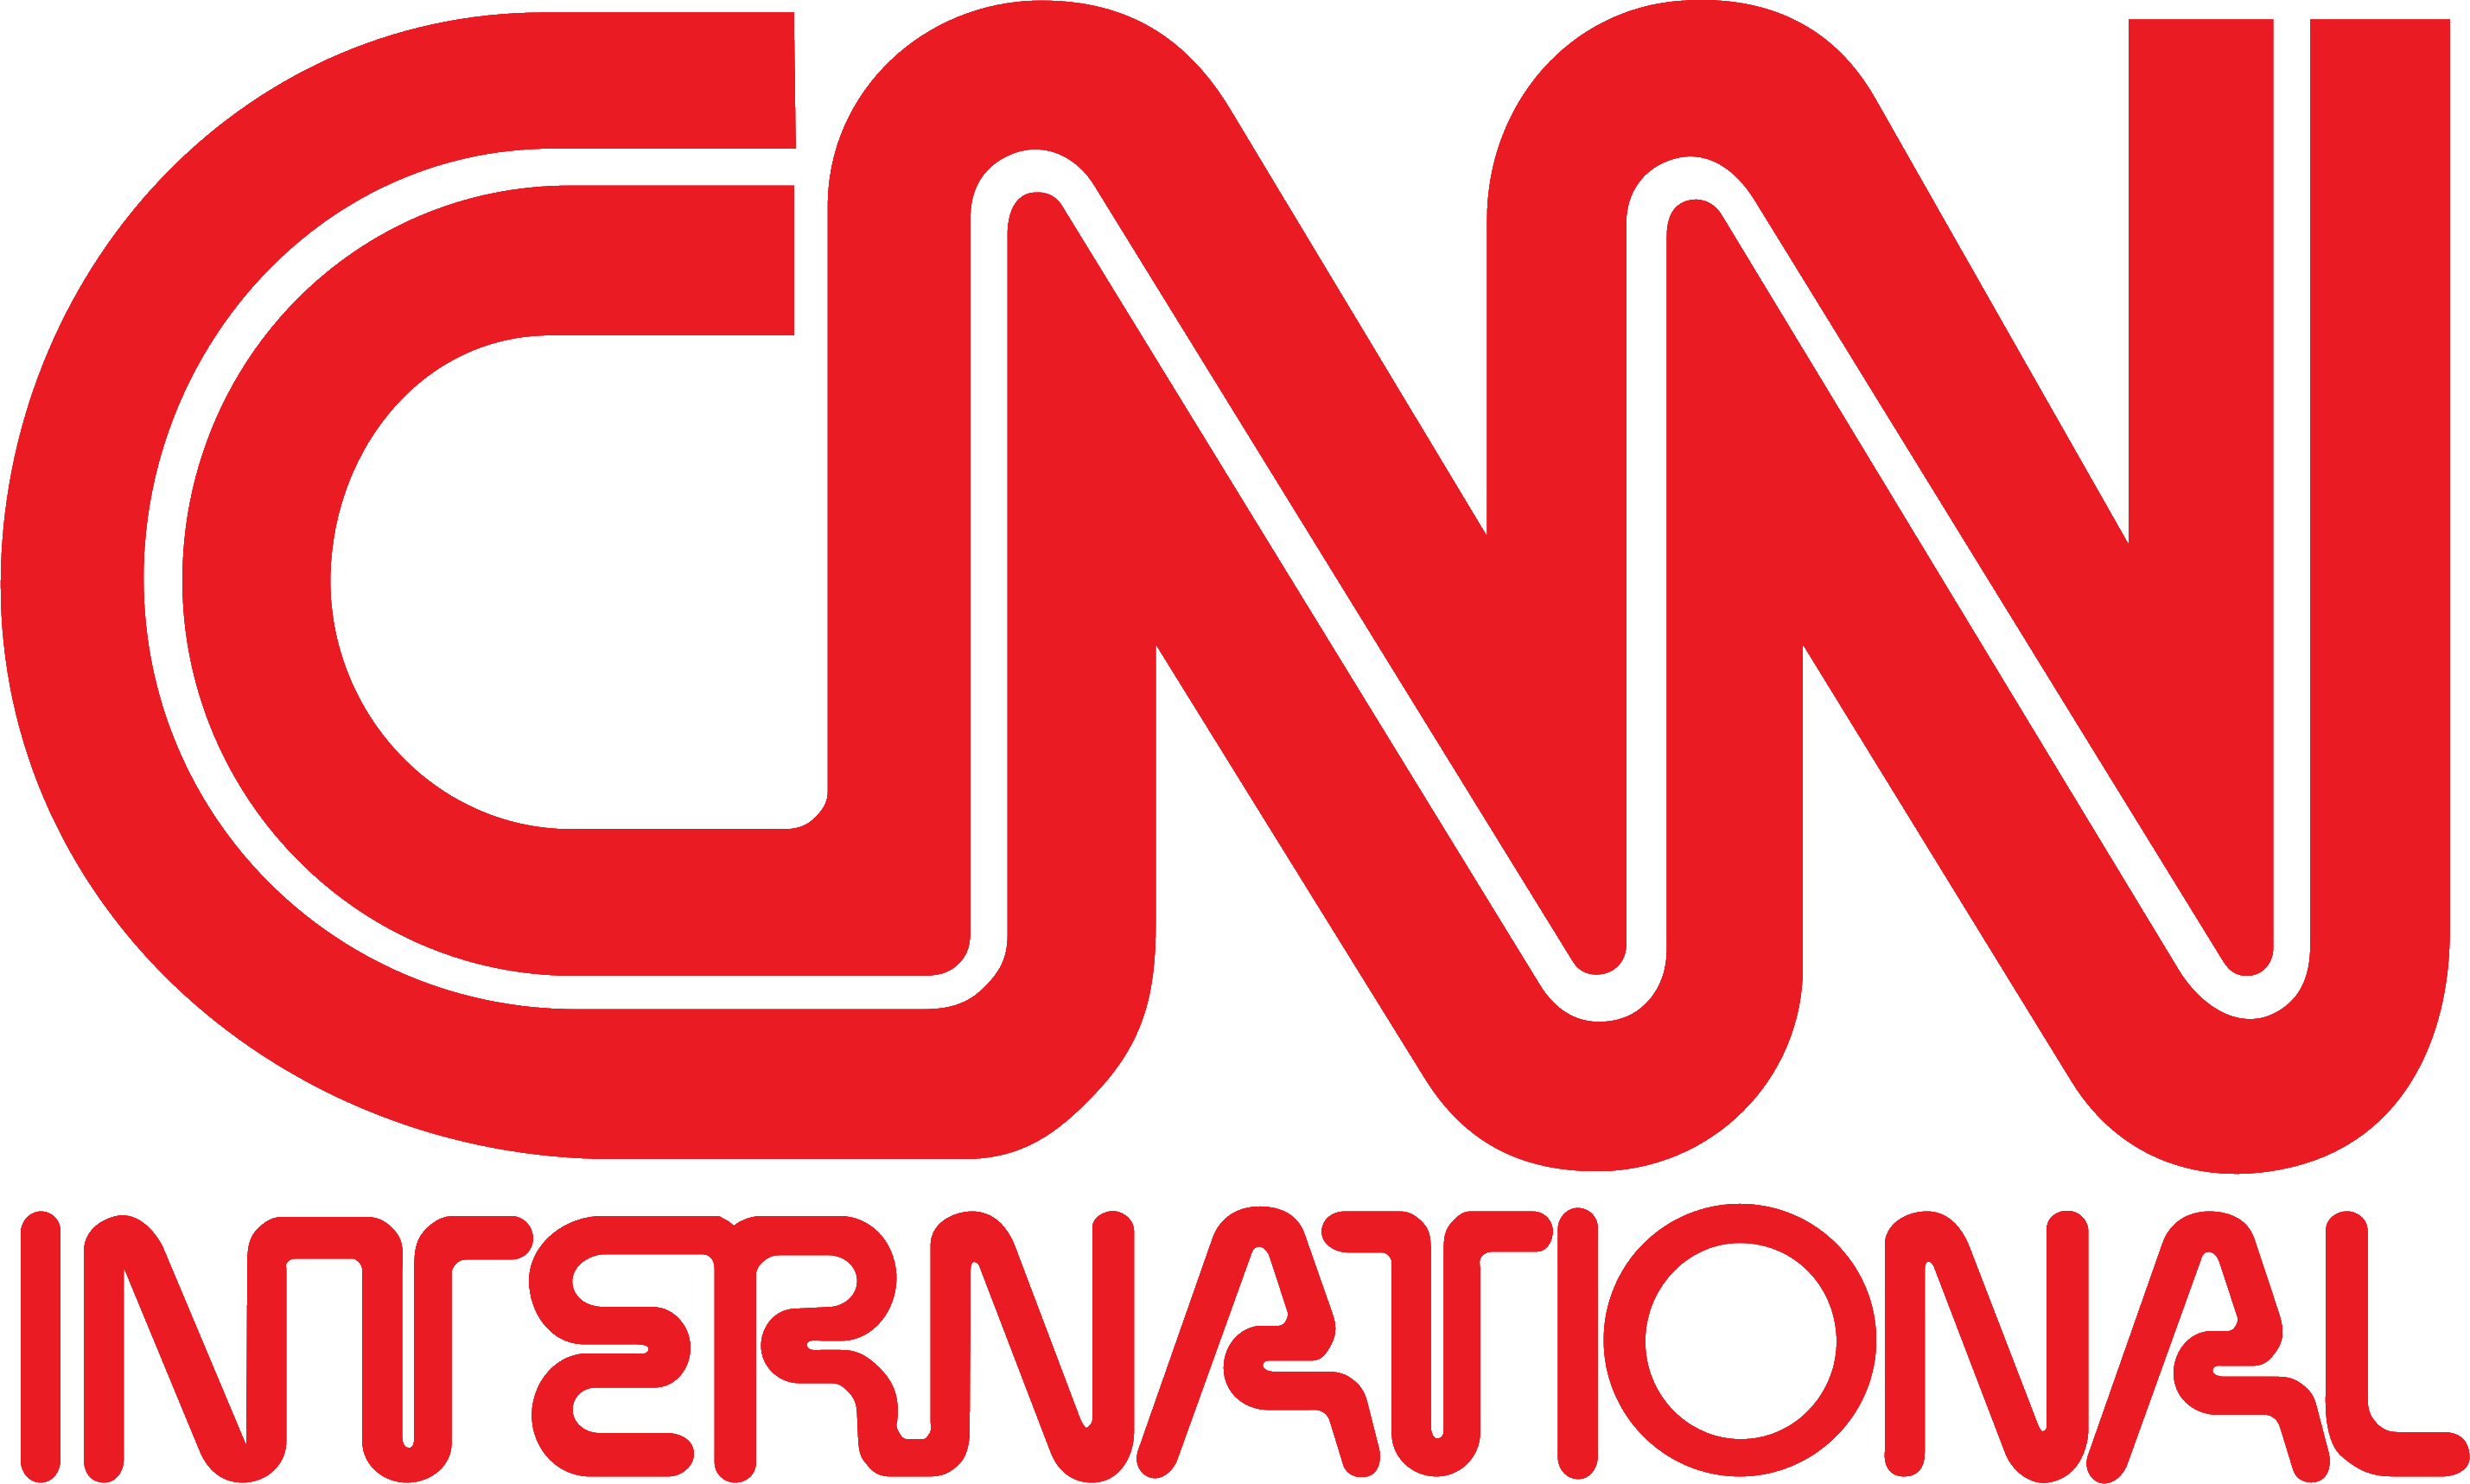 CNN International/Logos Mihsign Vision Fandom